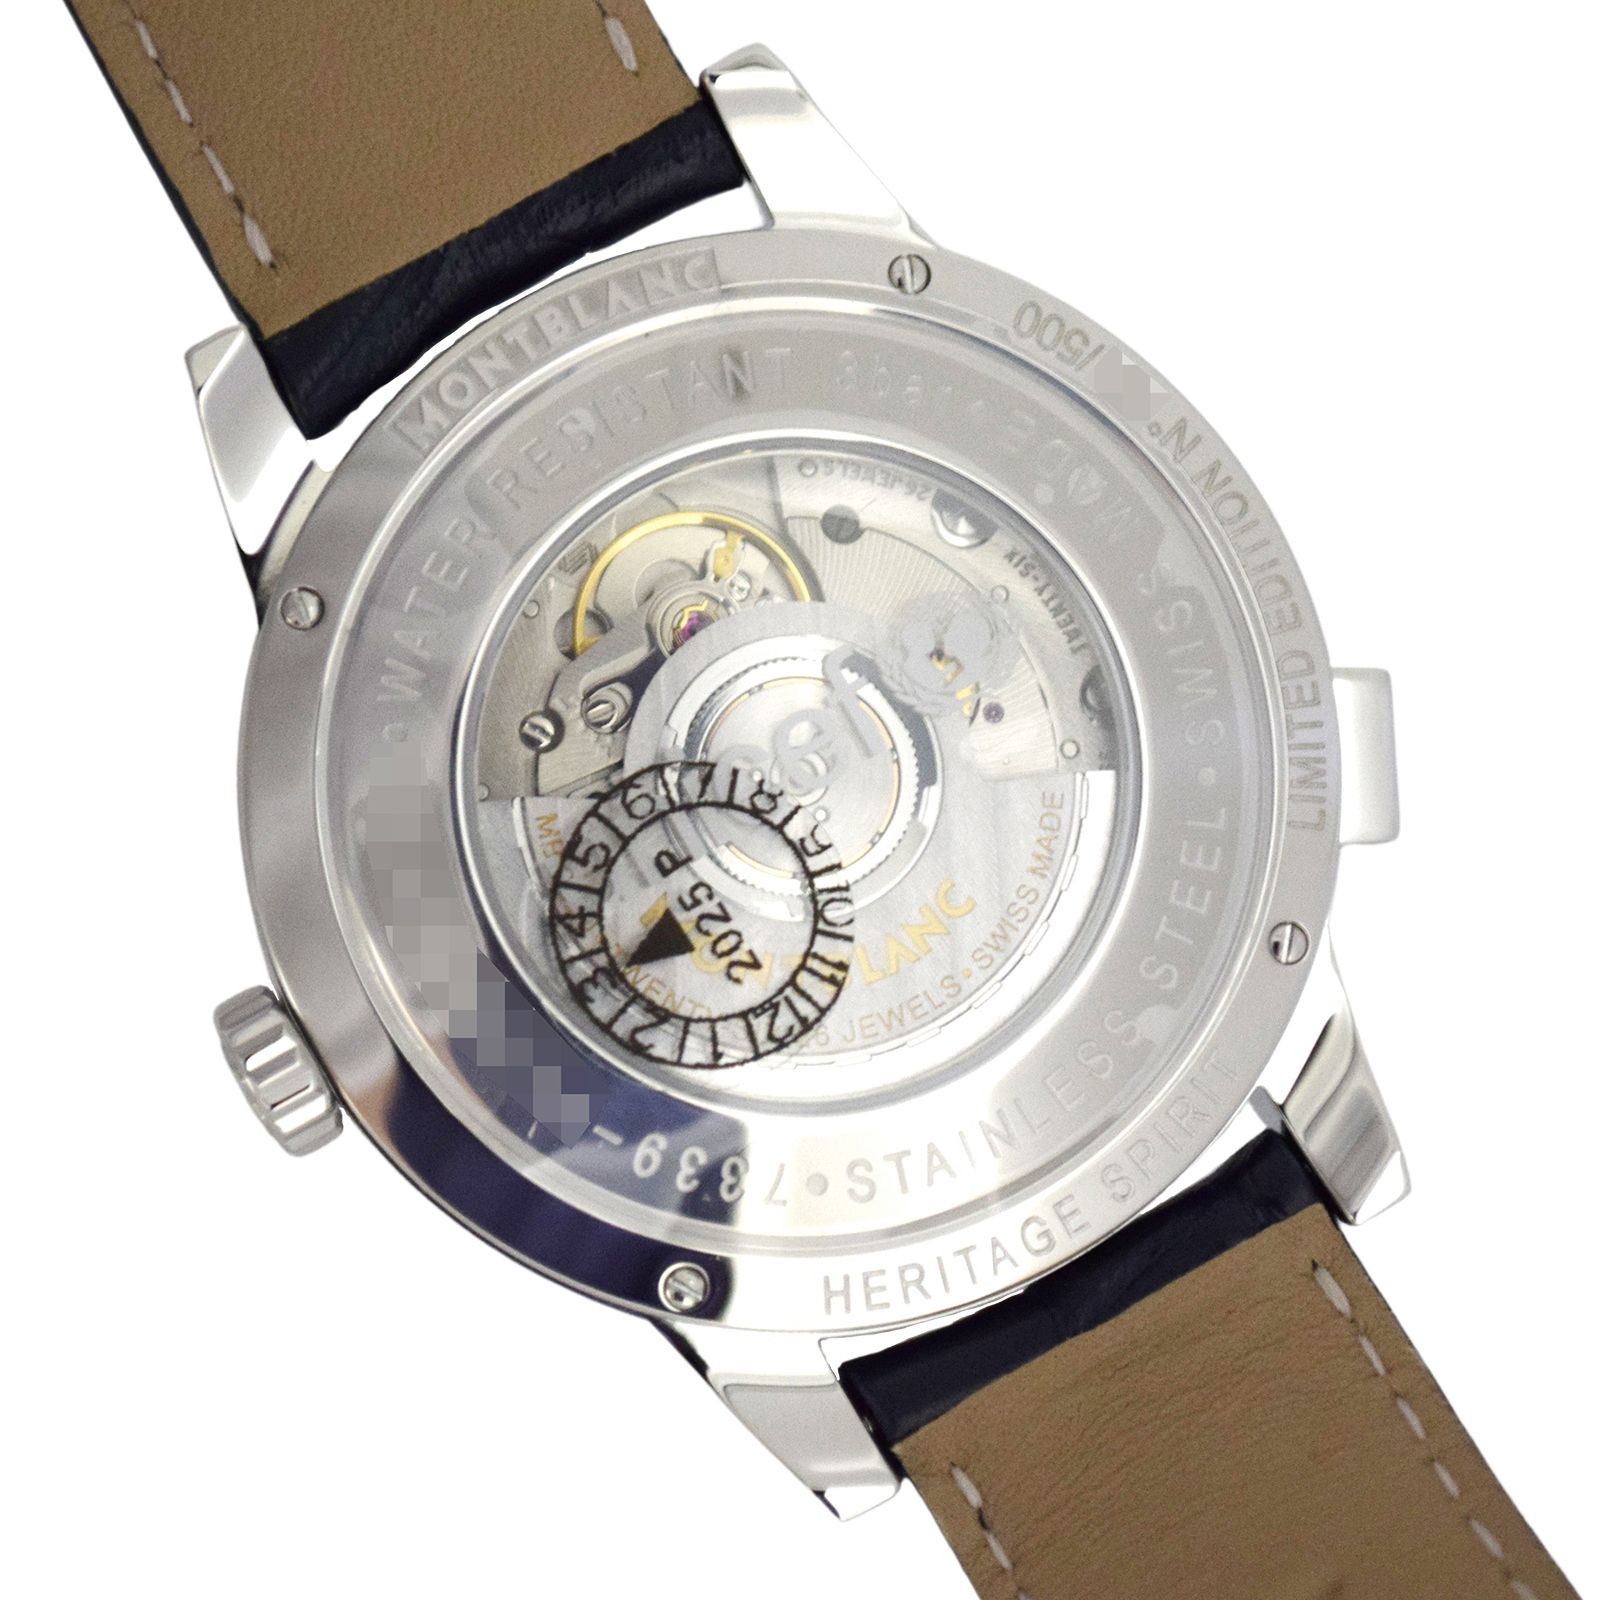 新品 保管品 500本限定 モンブラン ヘリテイジ スピリット オルビス テラルム アジア ユニセフ 116534 メンズ腕時計